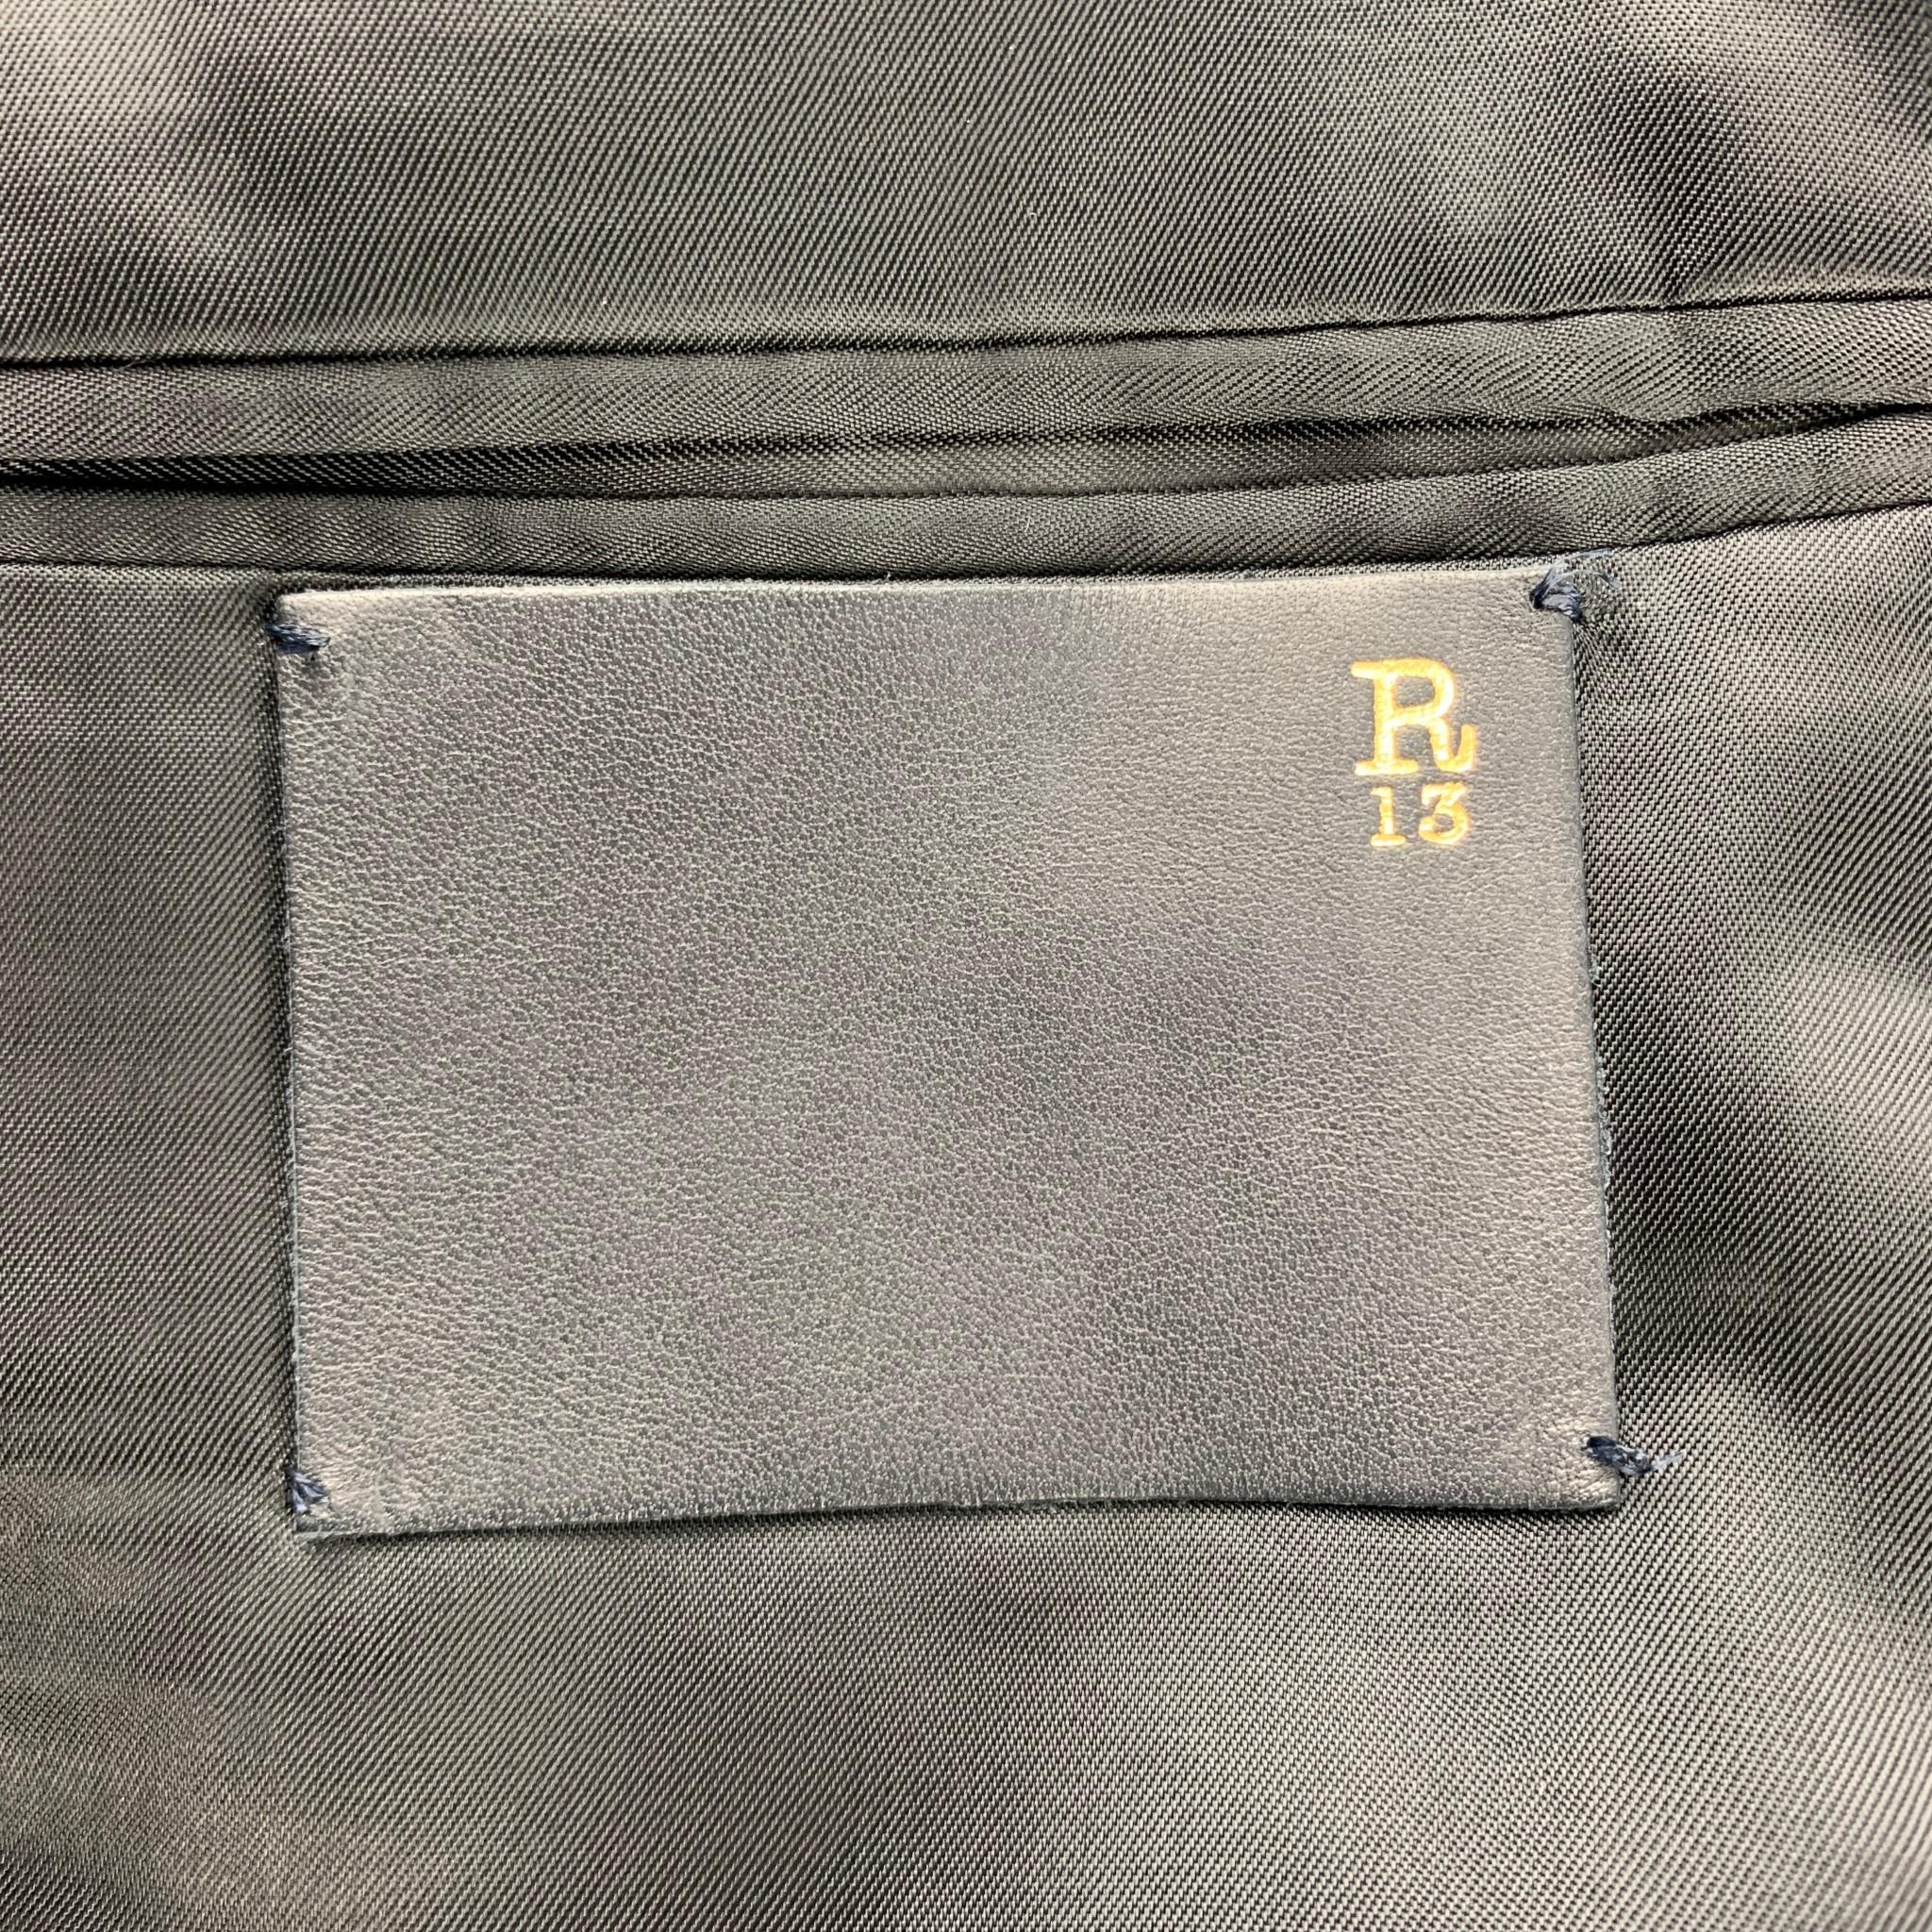 R13 Size 40 Black Embroidery Cotton Notch Lapel Sport Coat 2